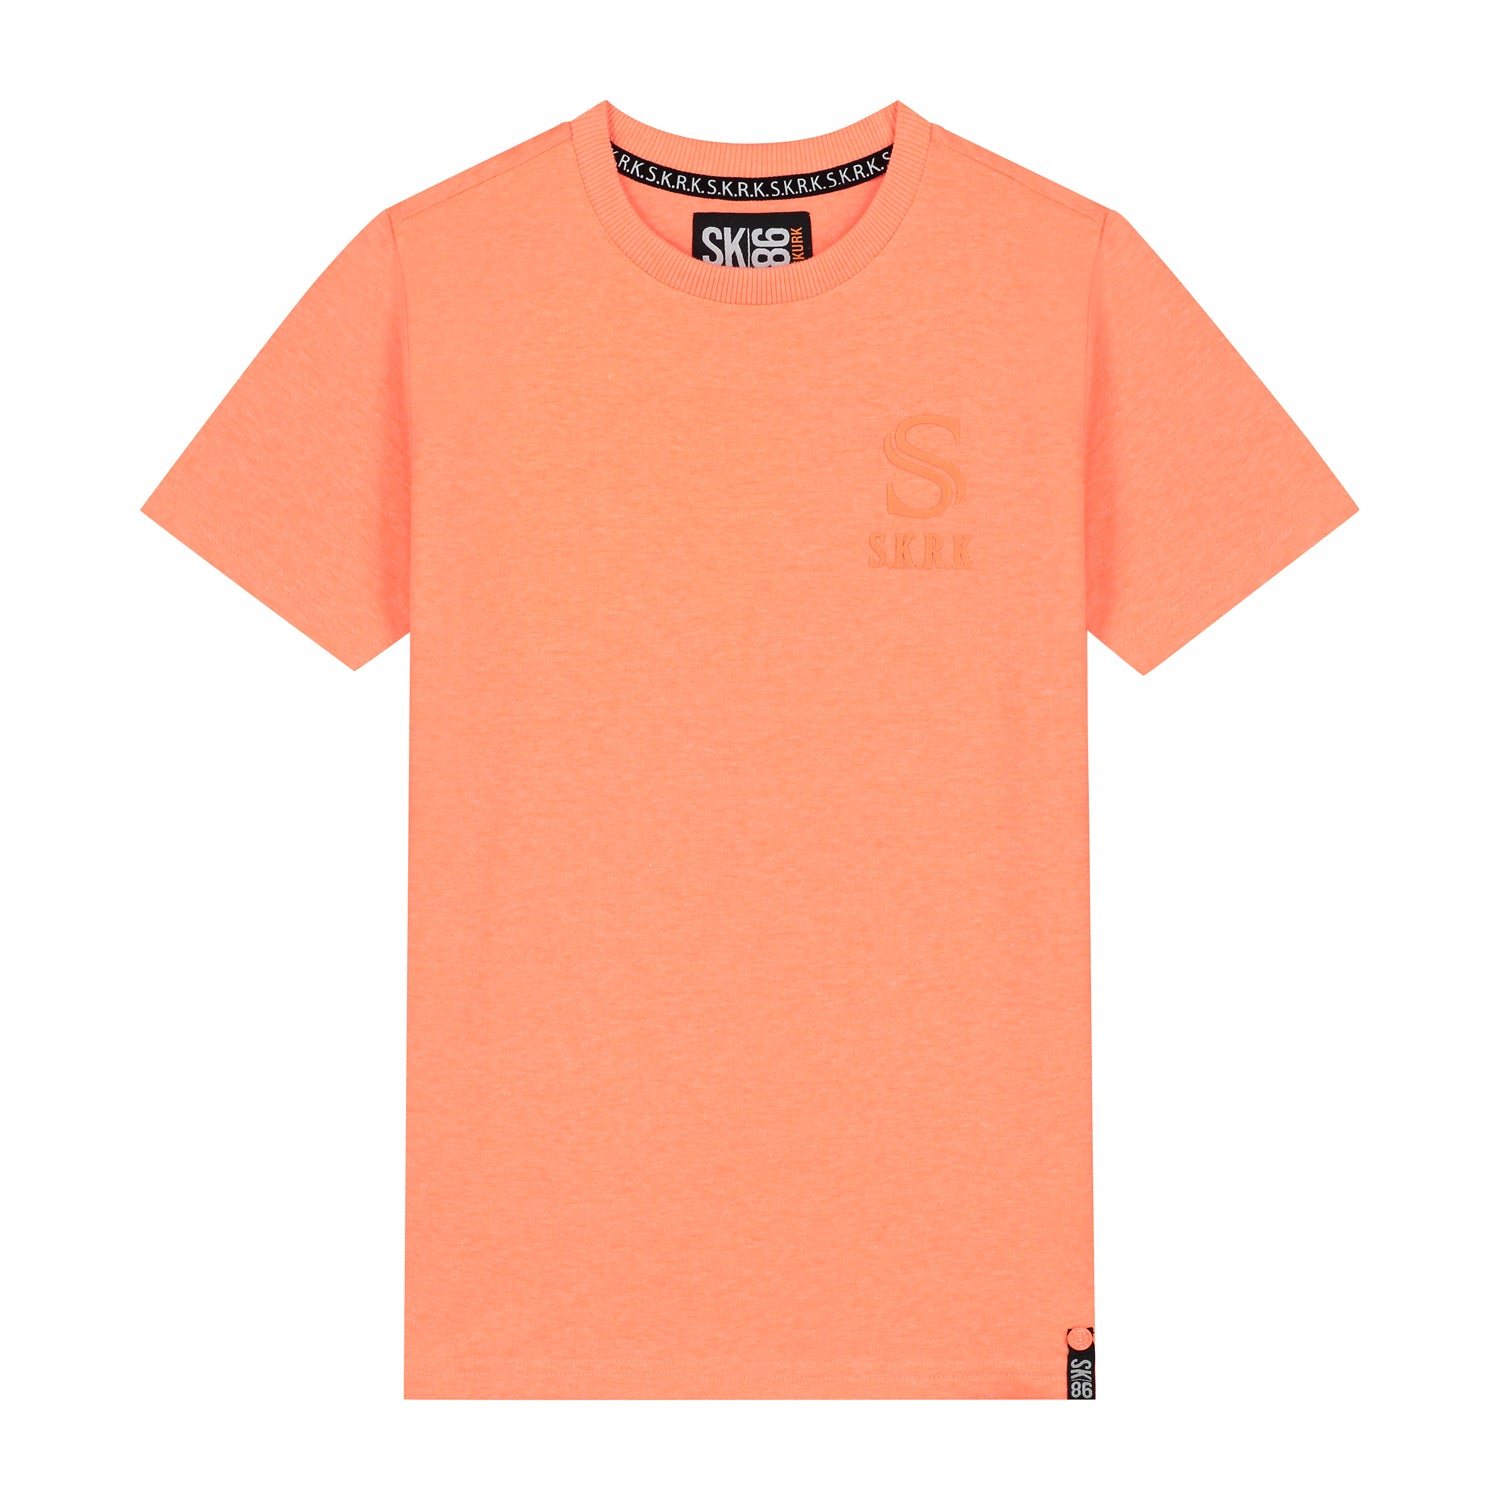 Skurk T-shirt Tasic Coral